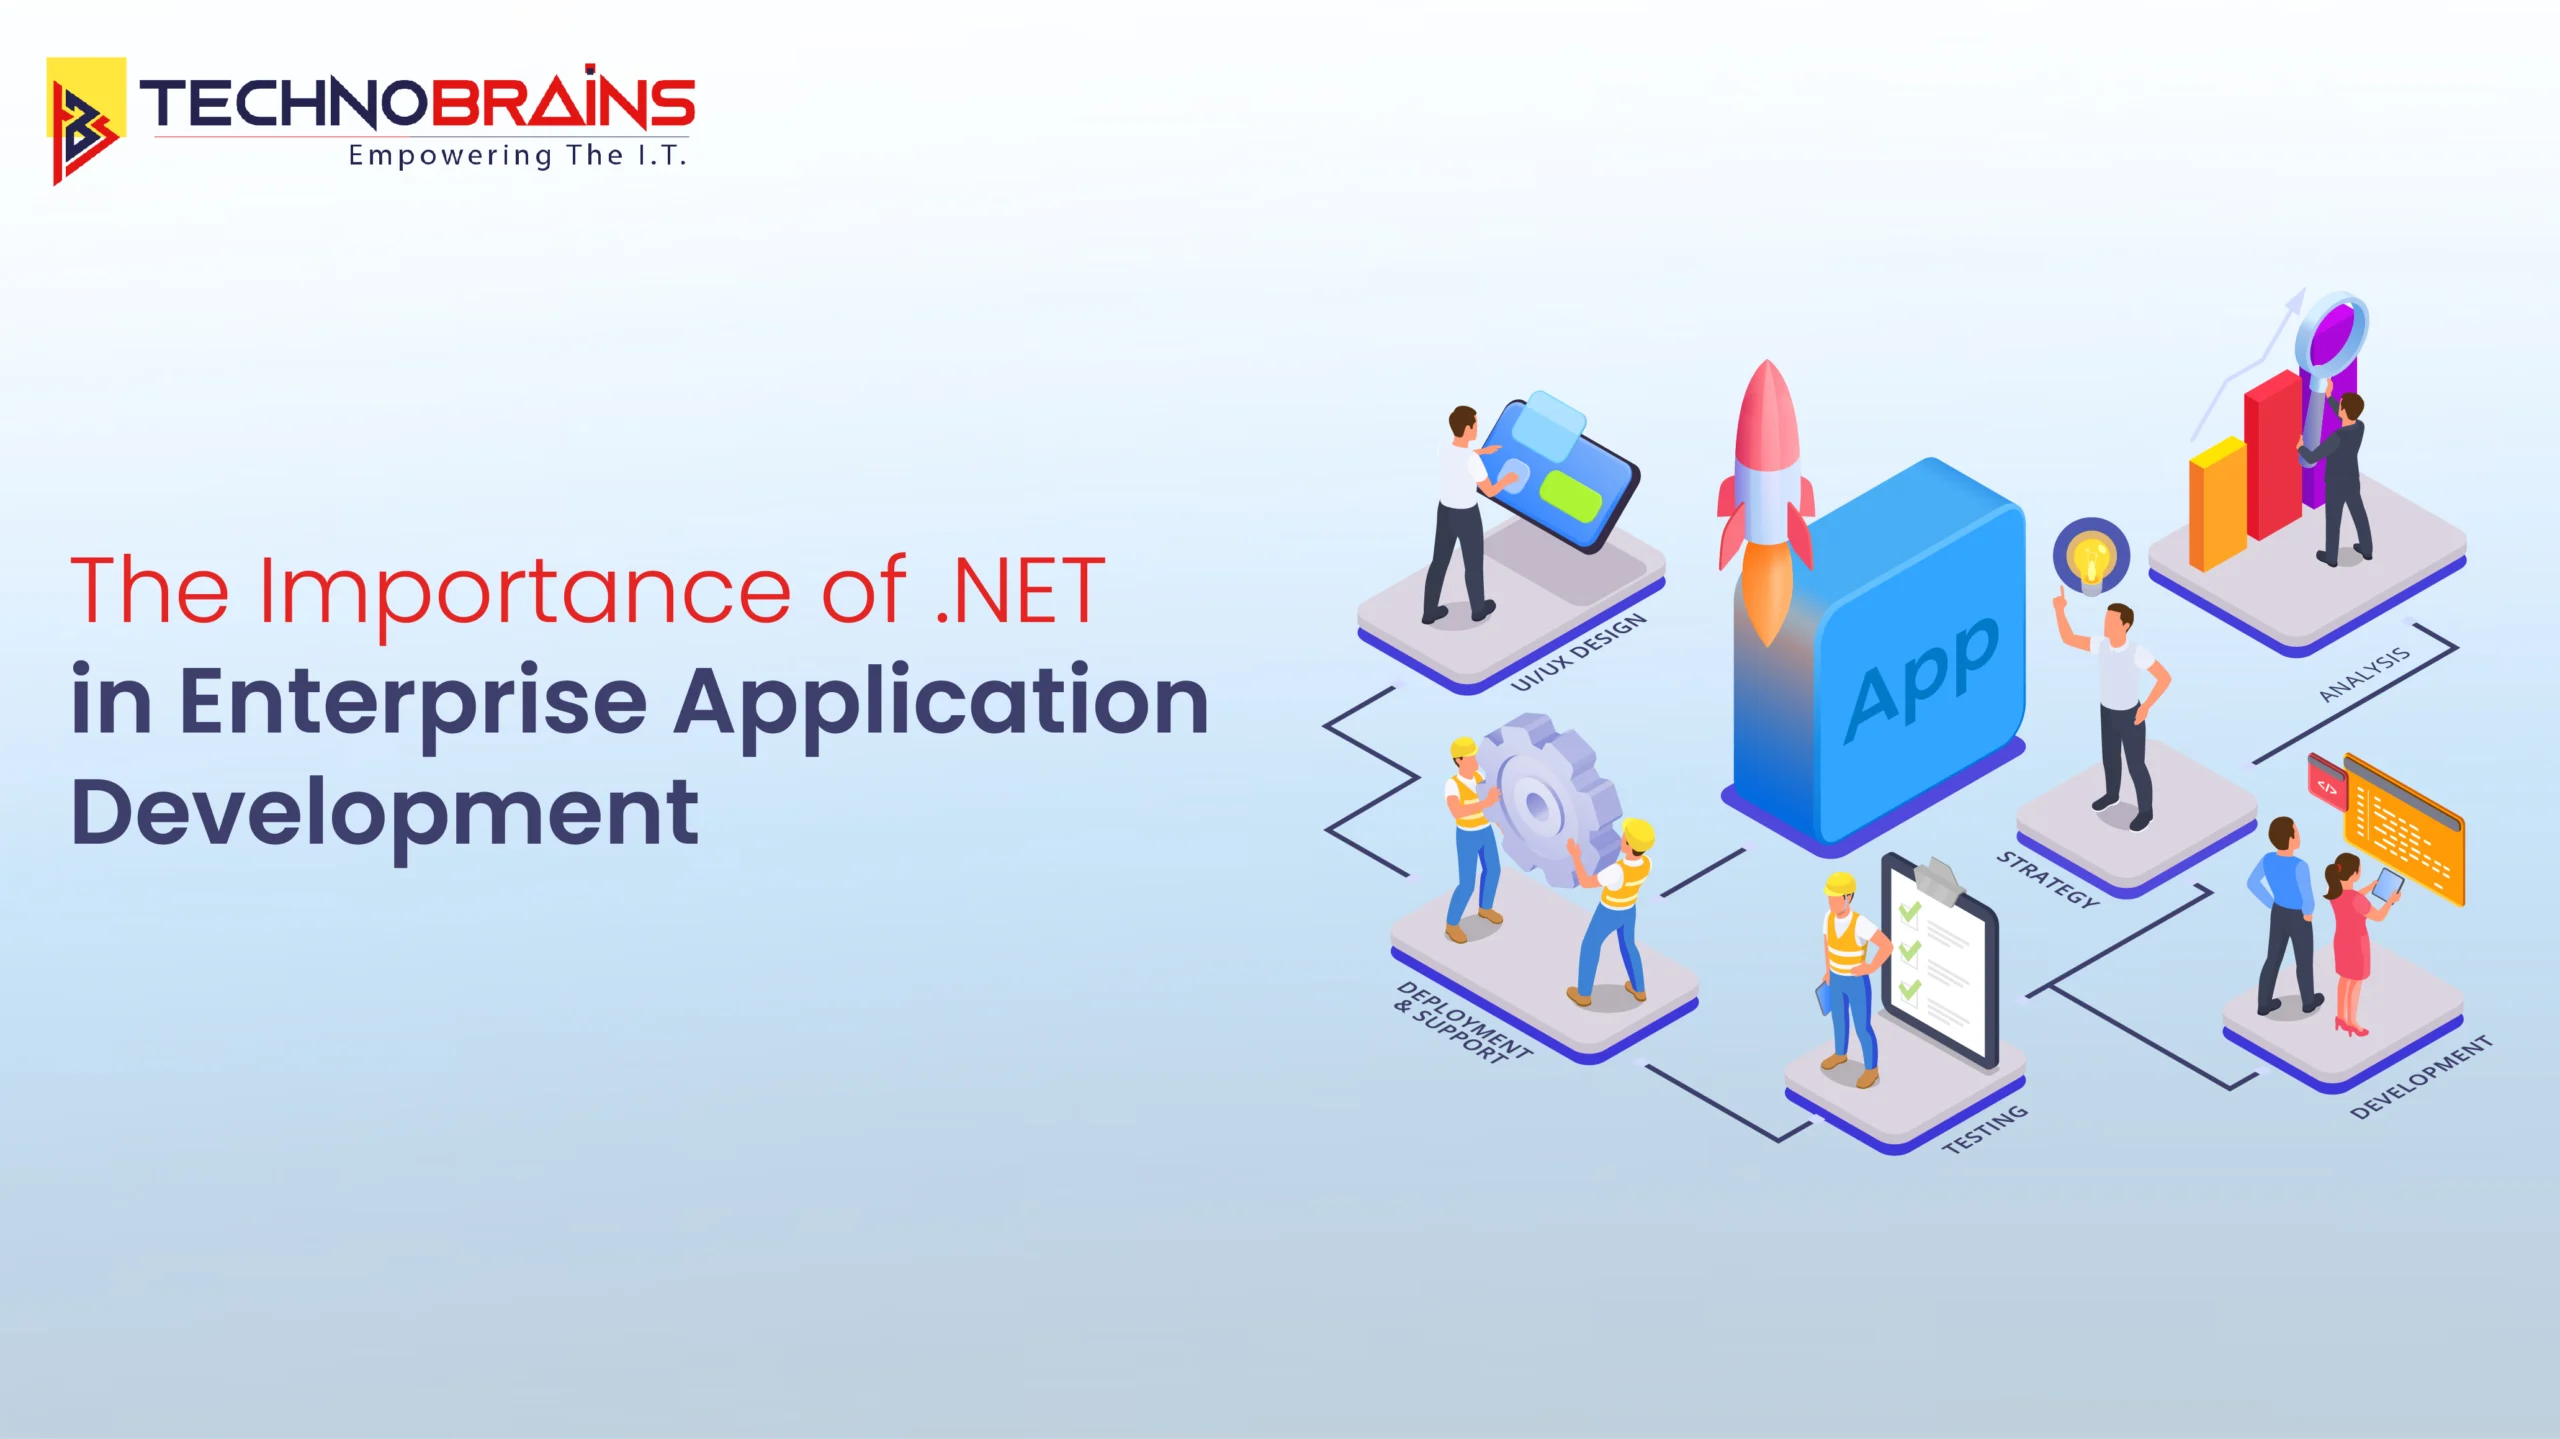 .NET for Enterprise Application Development